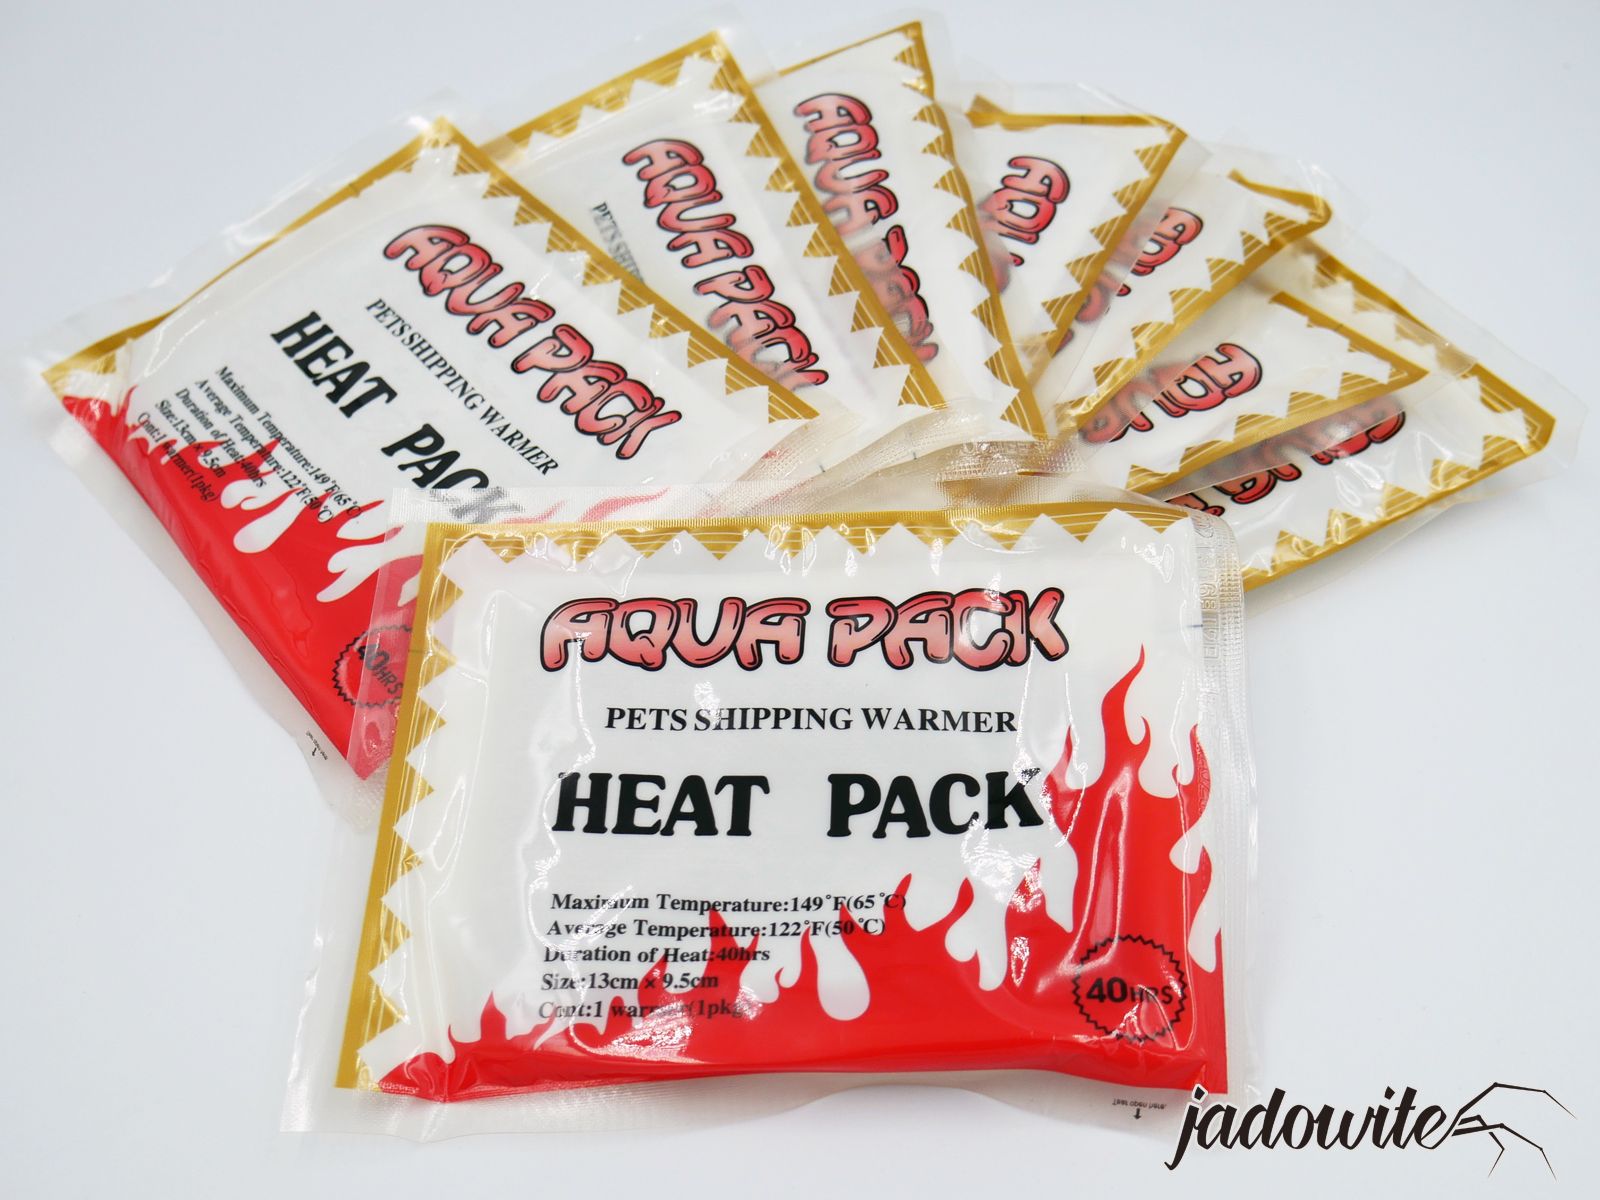 Heat pack x50 - wkład grzewczy do wysyłki 230,00 zł